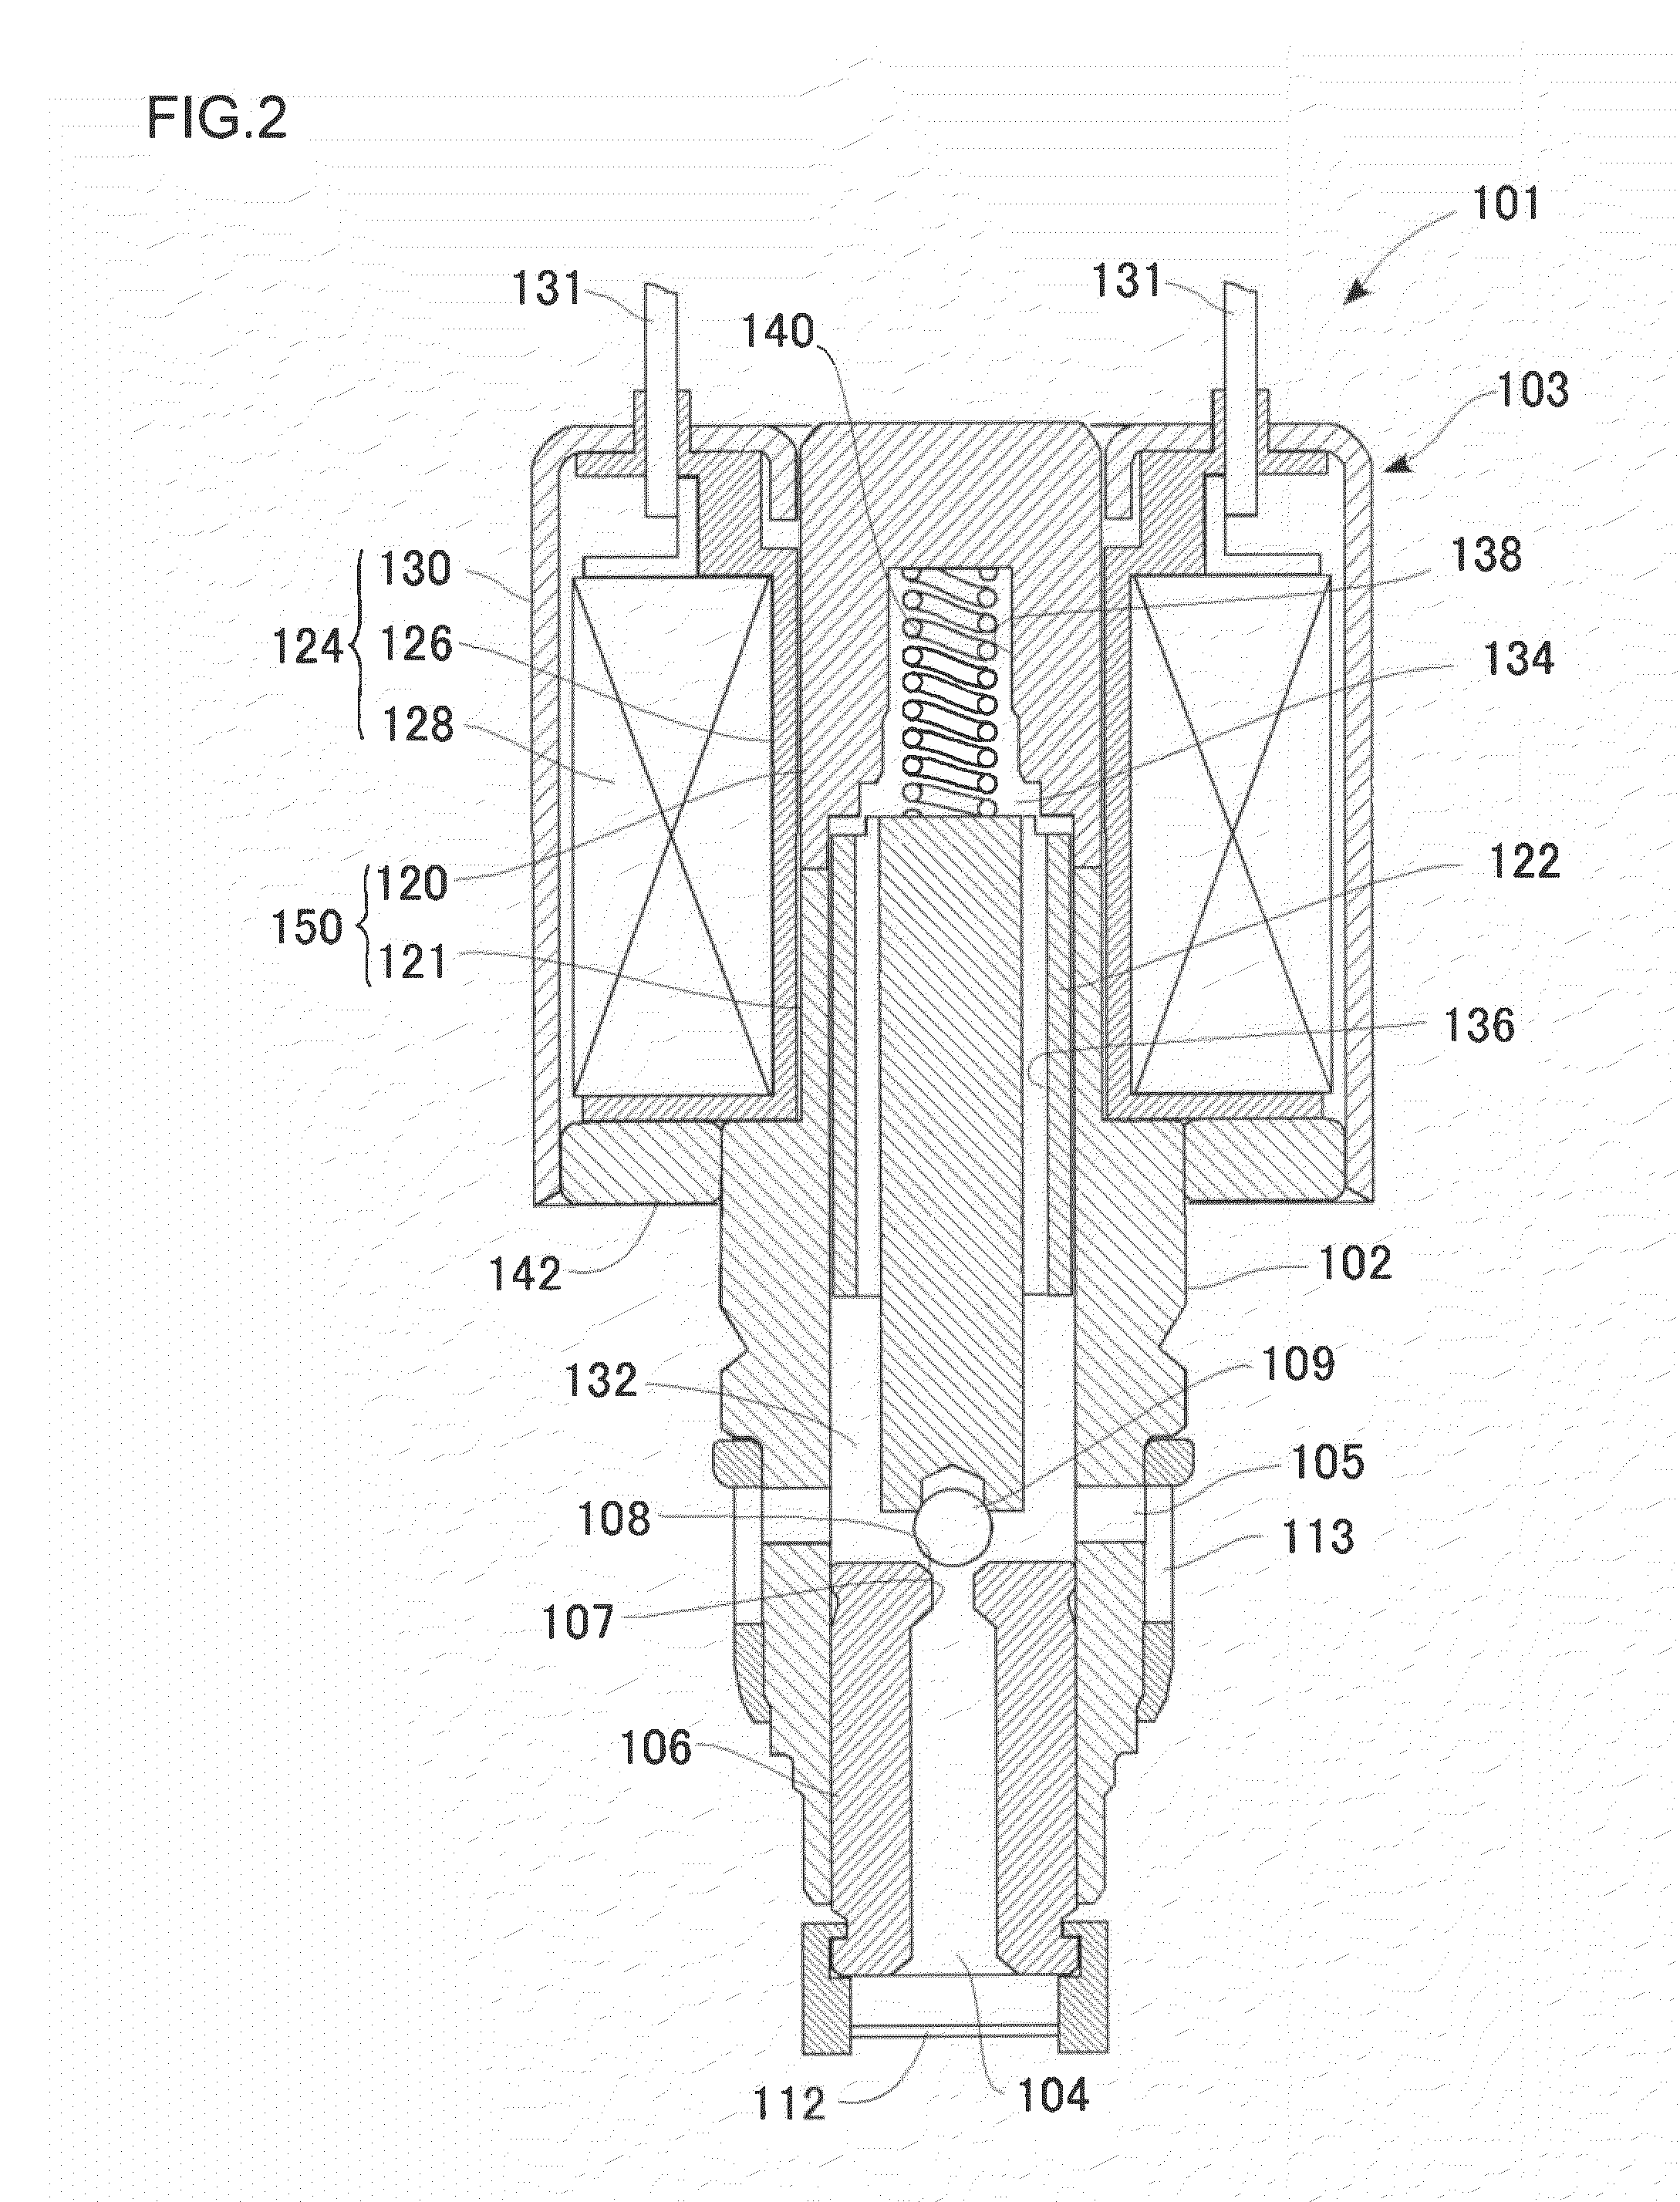 Solenoid valve control apparatus and actuator